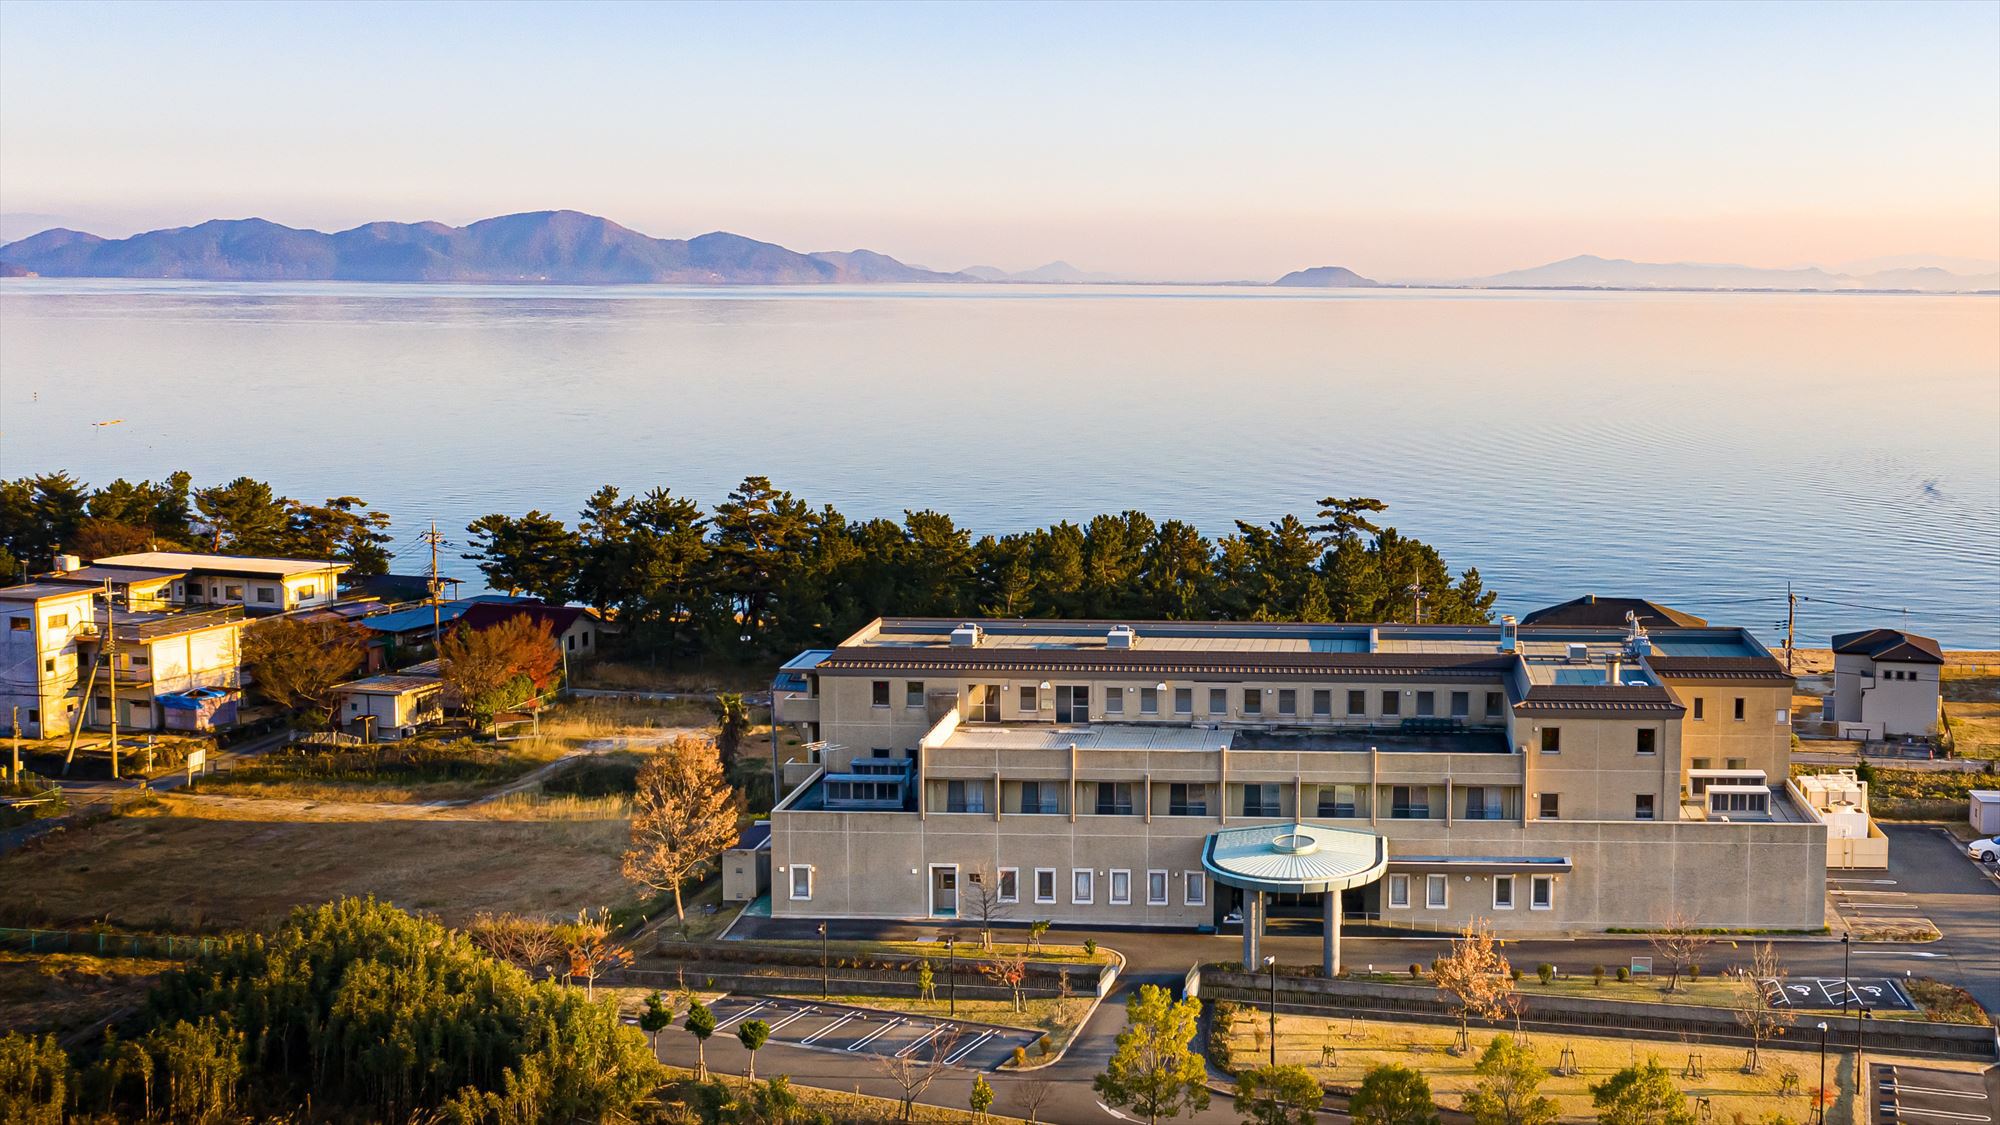 ホテル外観と琵琶湖畔